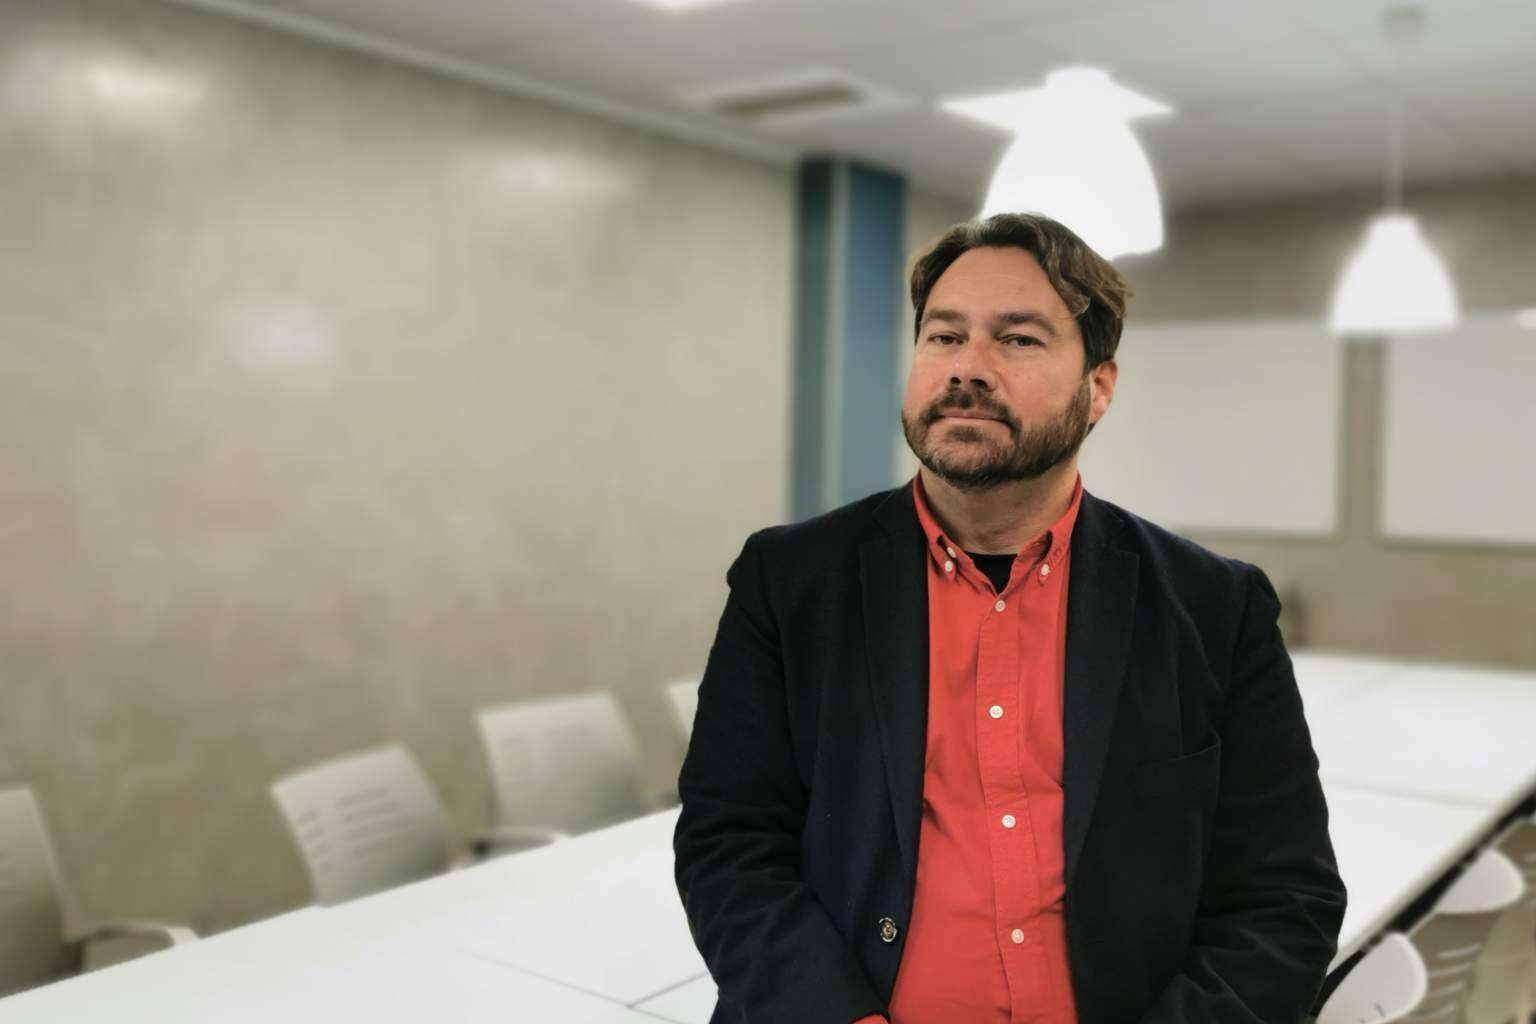  Ángel González, CEO de NOÁTICA, explica cómo es la lucha contra la cibercriminalidad en la era digital 